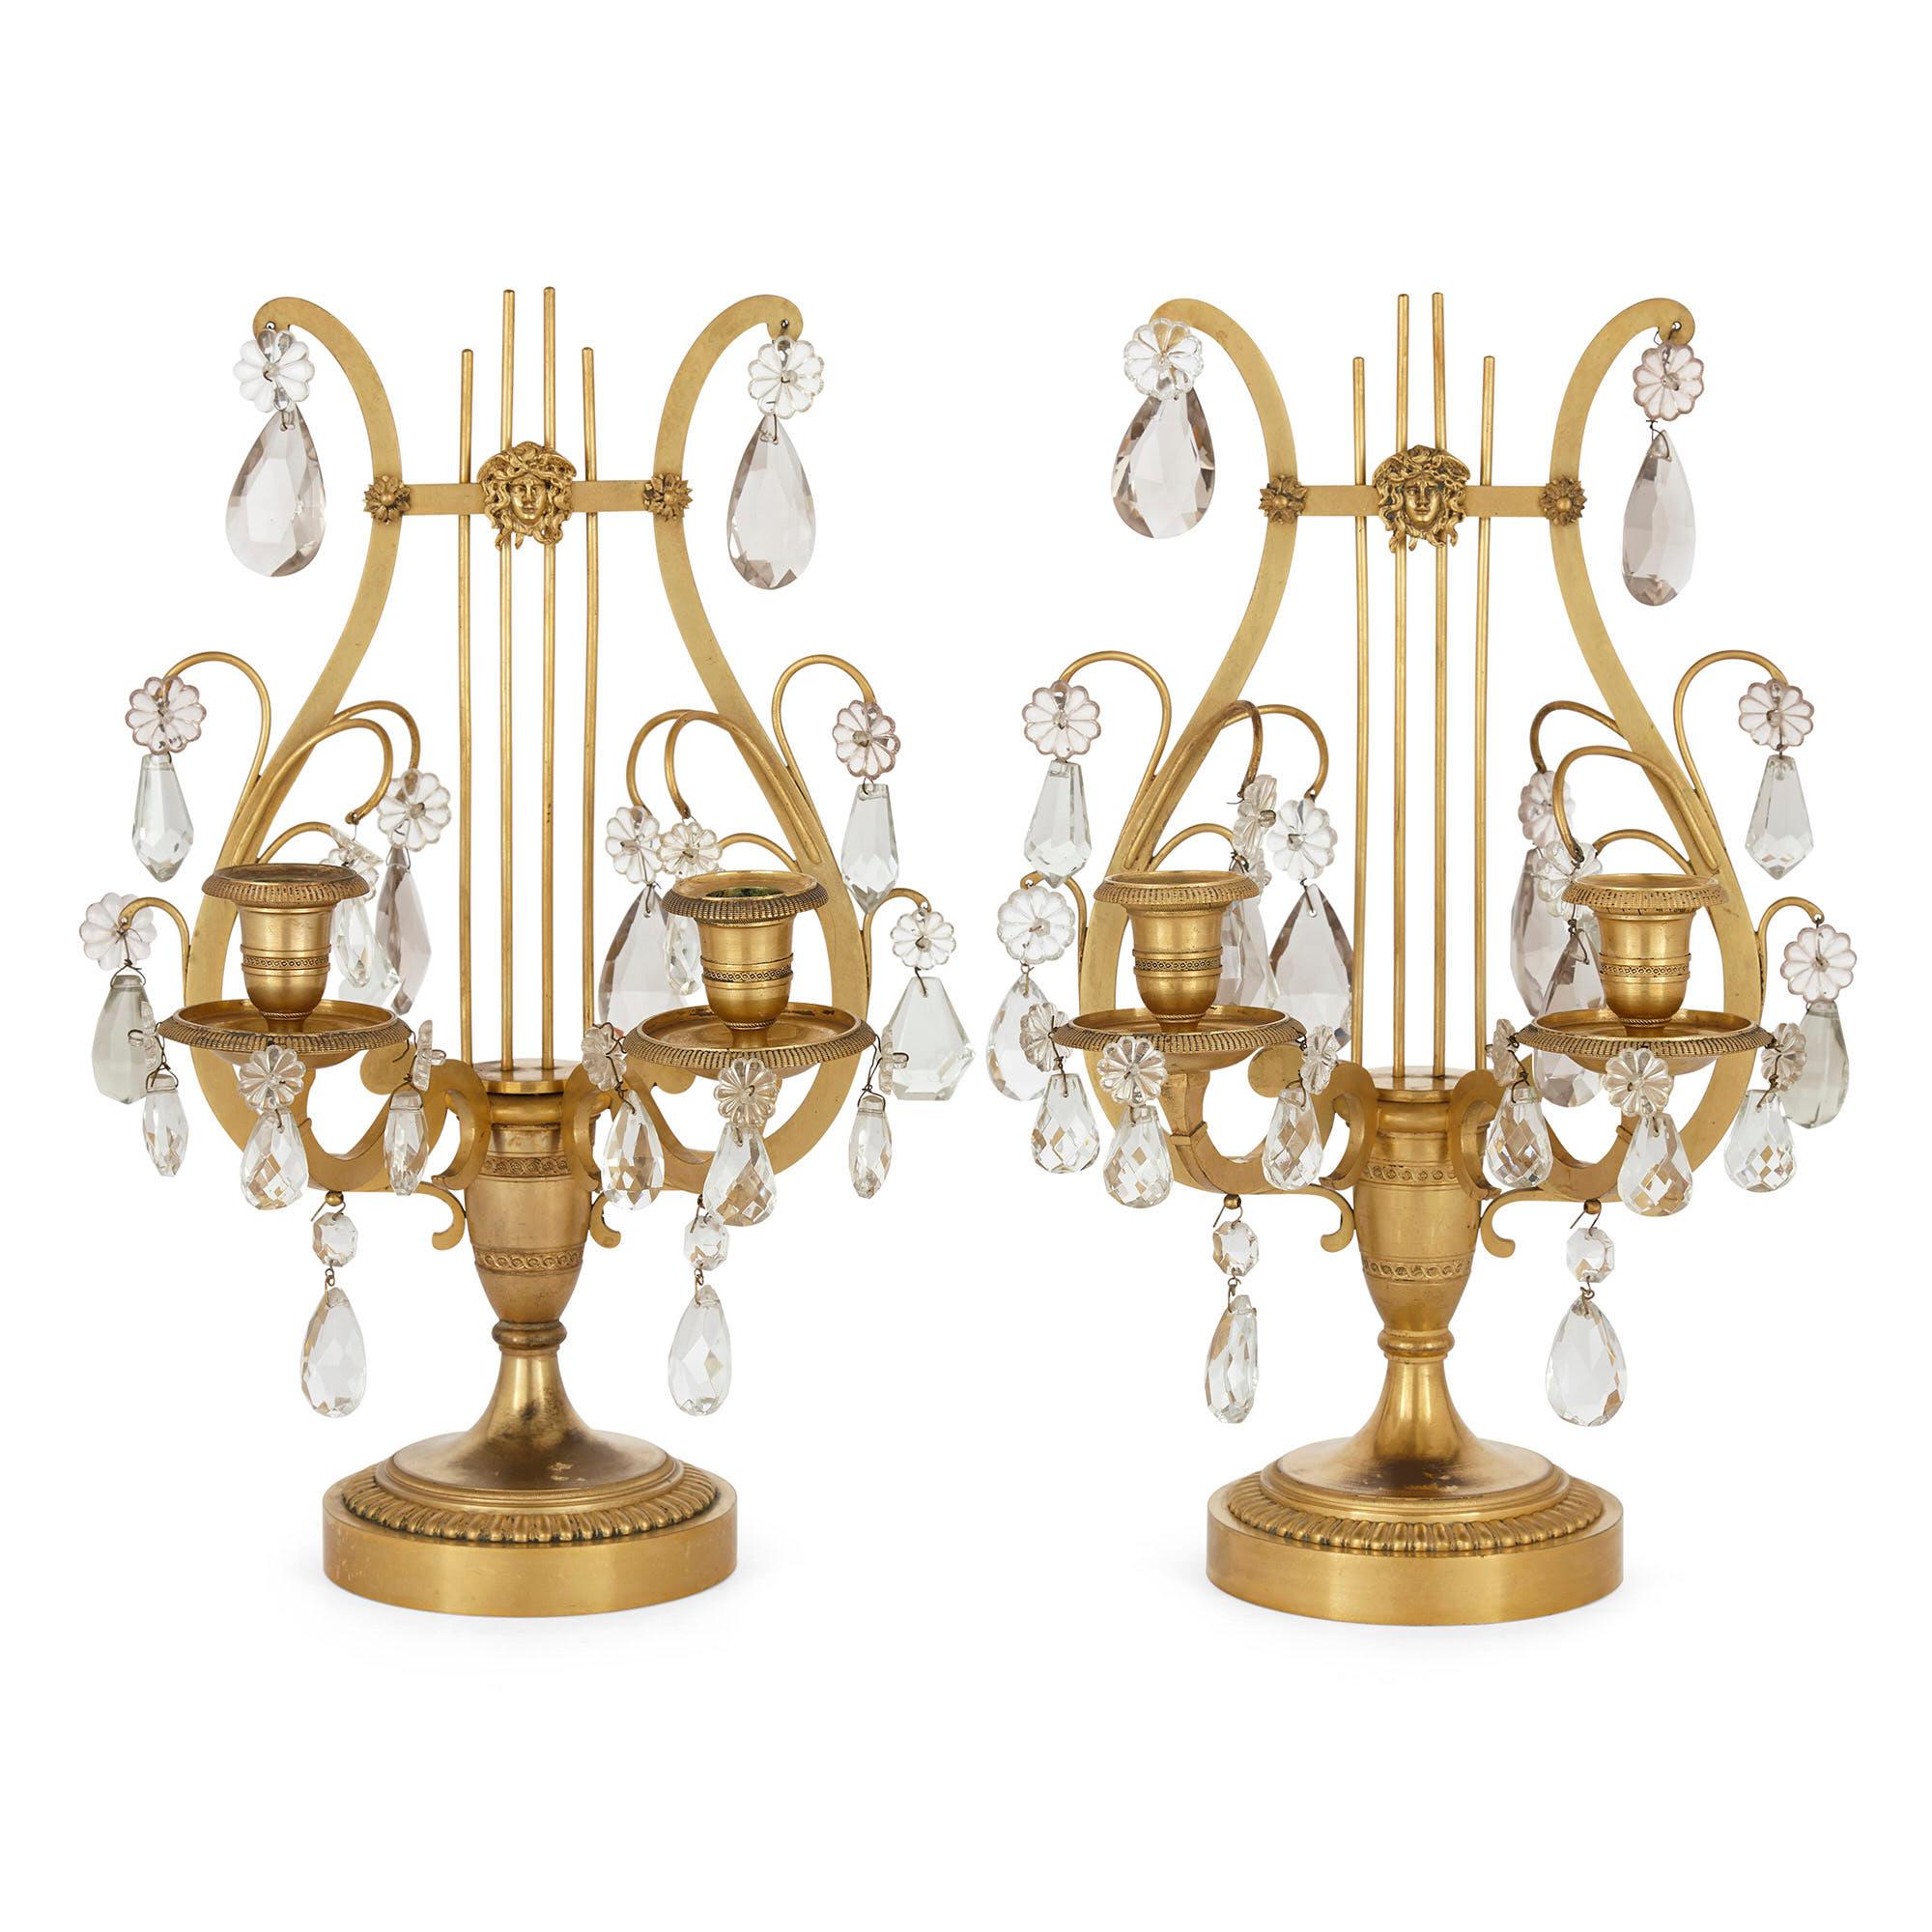 Paar neoklassische Leuchter im Stil Louis XVI aus Kristall und vergoldeter Bronze,
Französisch, 19. Jahrhundert
Abmessungen: Höhe 40cm, Breite 26cm, Tiefe 24cm

Inspiriert vom neoklassizistischen Stil Ludwigs XVI., ist dieses prächtige Paar